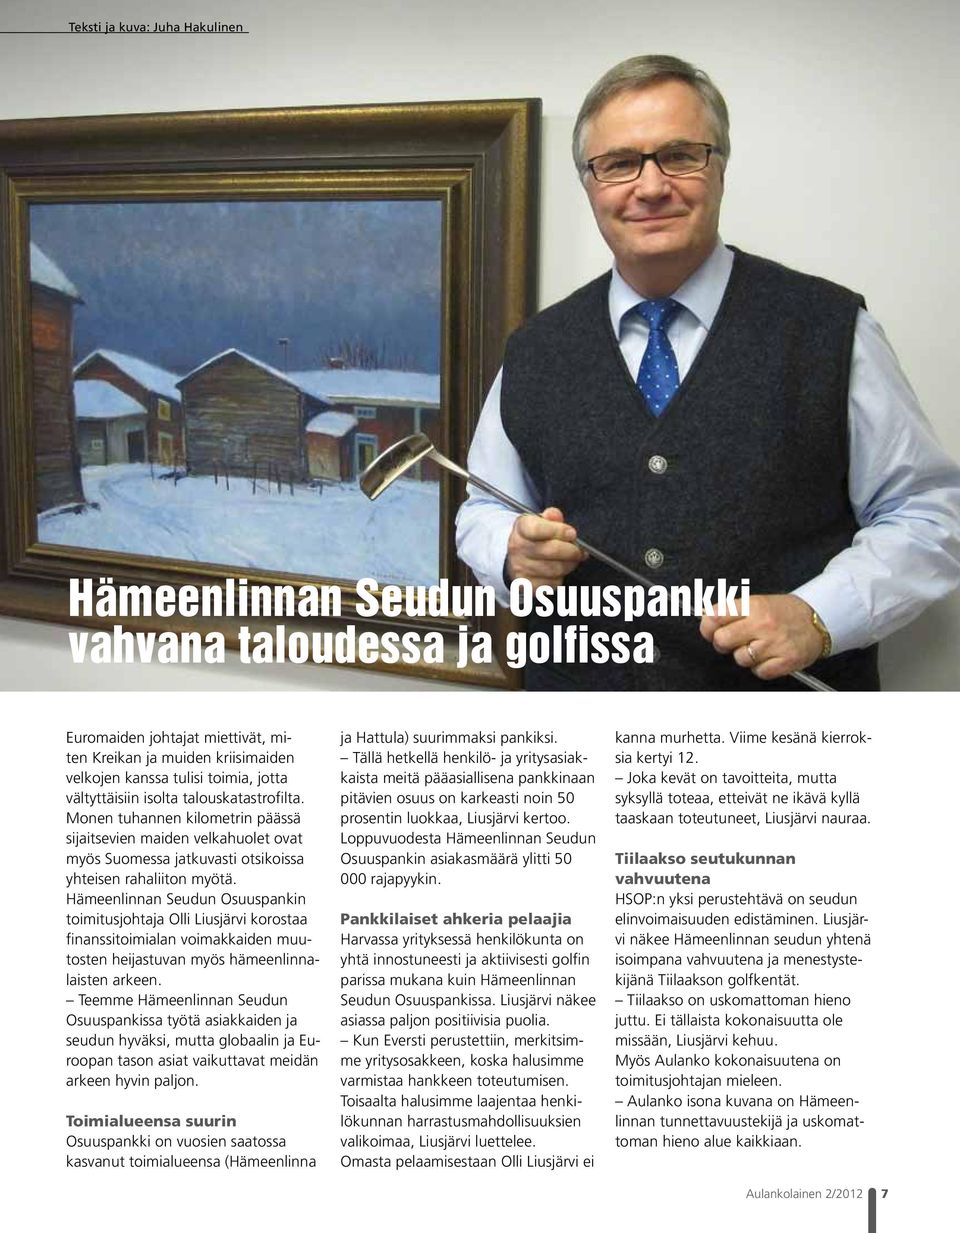 Hämeenlinnan Seudun Osuuspankin toimitusjohtaja Olli Liusjärvi korostaa finanssitoimialan voimakkaiden muutosten heijastuvan myös hämeenlinnalaisten arkeen.